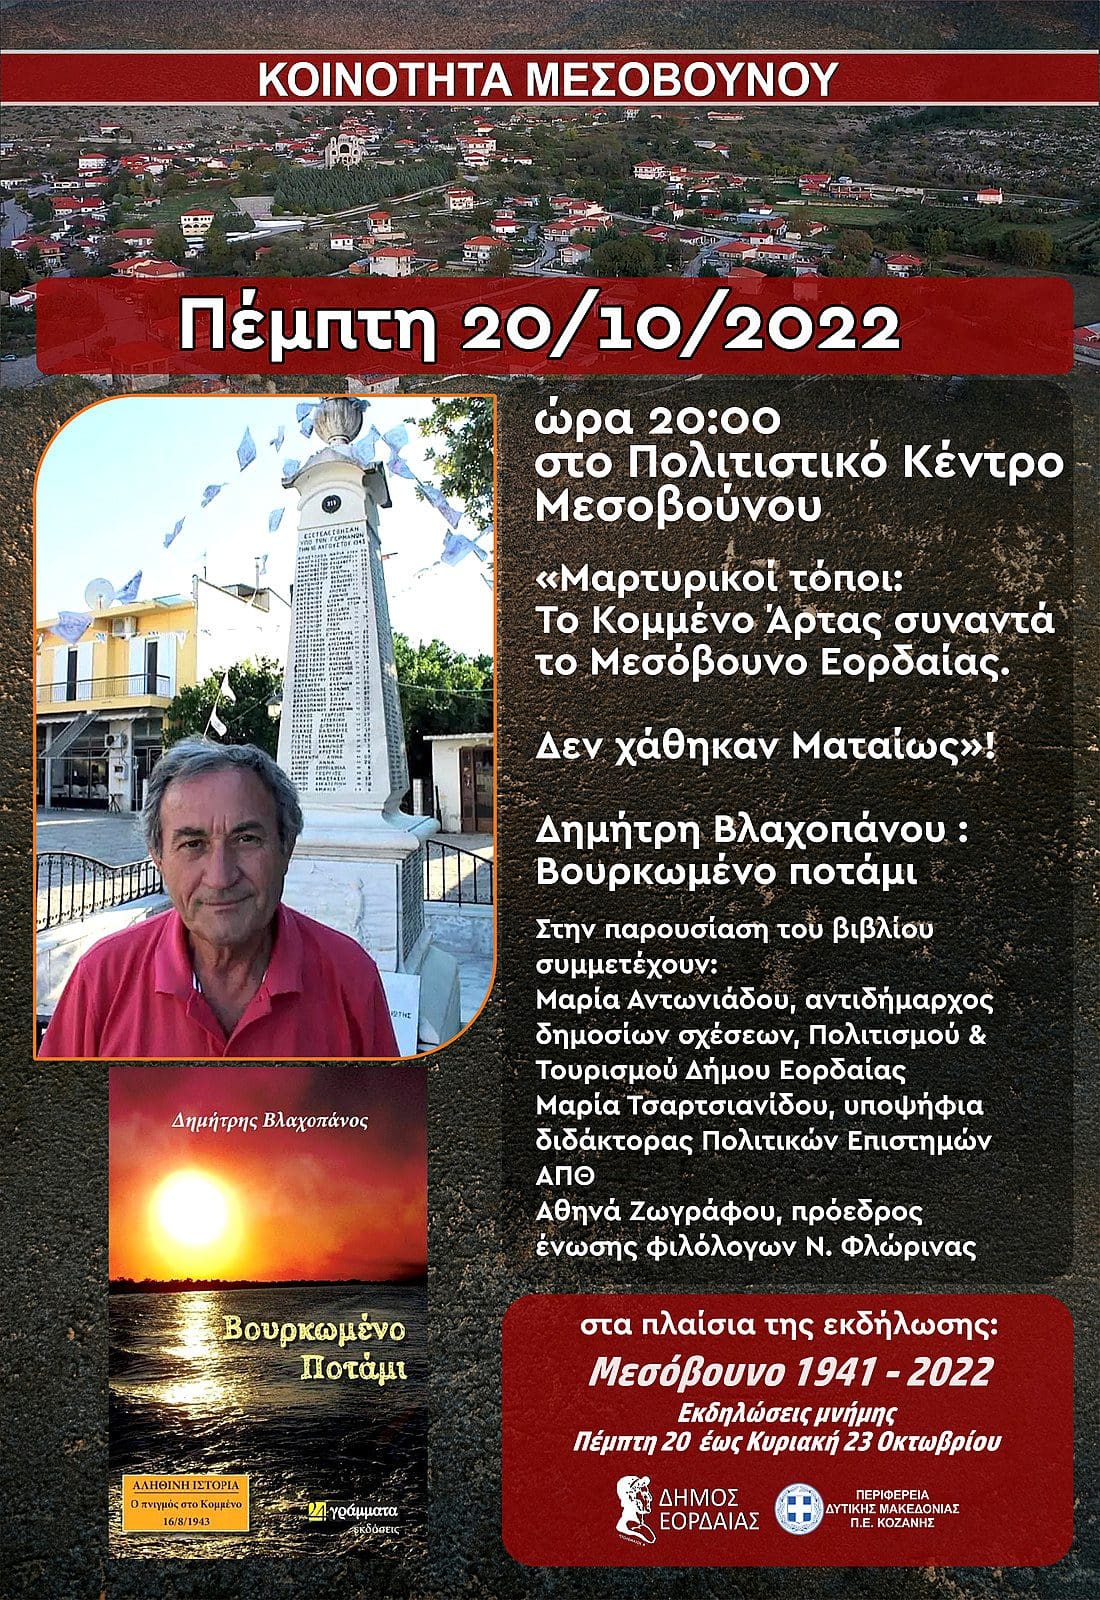 Eordaialive.com - Τα Νέα της Πτολεμαΐδας, Εορδαίας, Κοζάνης Δημήτρης Βλαχοπάνος: Το Κομμένο Άρτας συναντά το Μεσόβουνο Εορδαίας. Παρουσίαση βιβλίου την Πέμπτη 20/10/2022